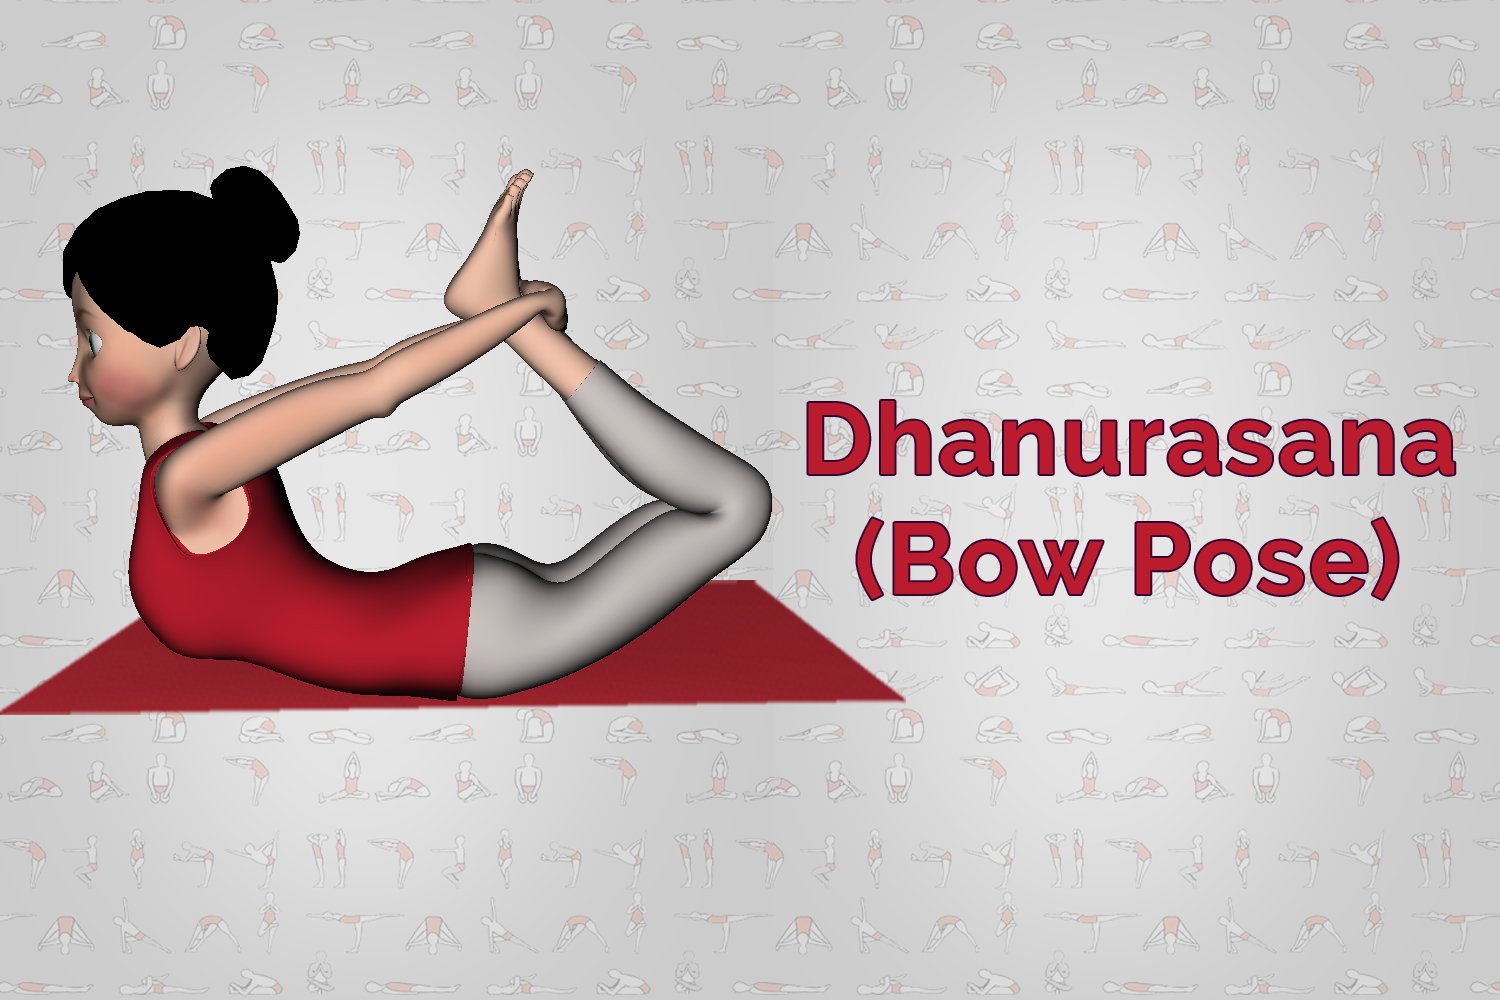 Dhanurasana Benefits & Pose Breakdown | Bow pose yoga, Bow pose, Yoga jobs